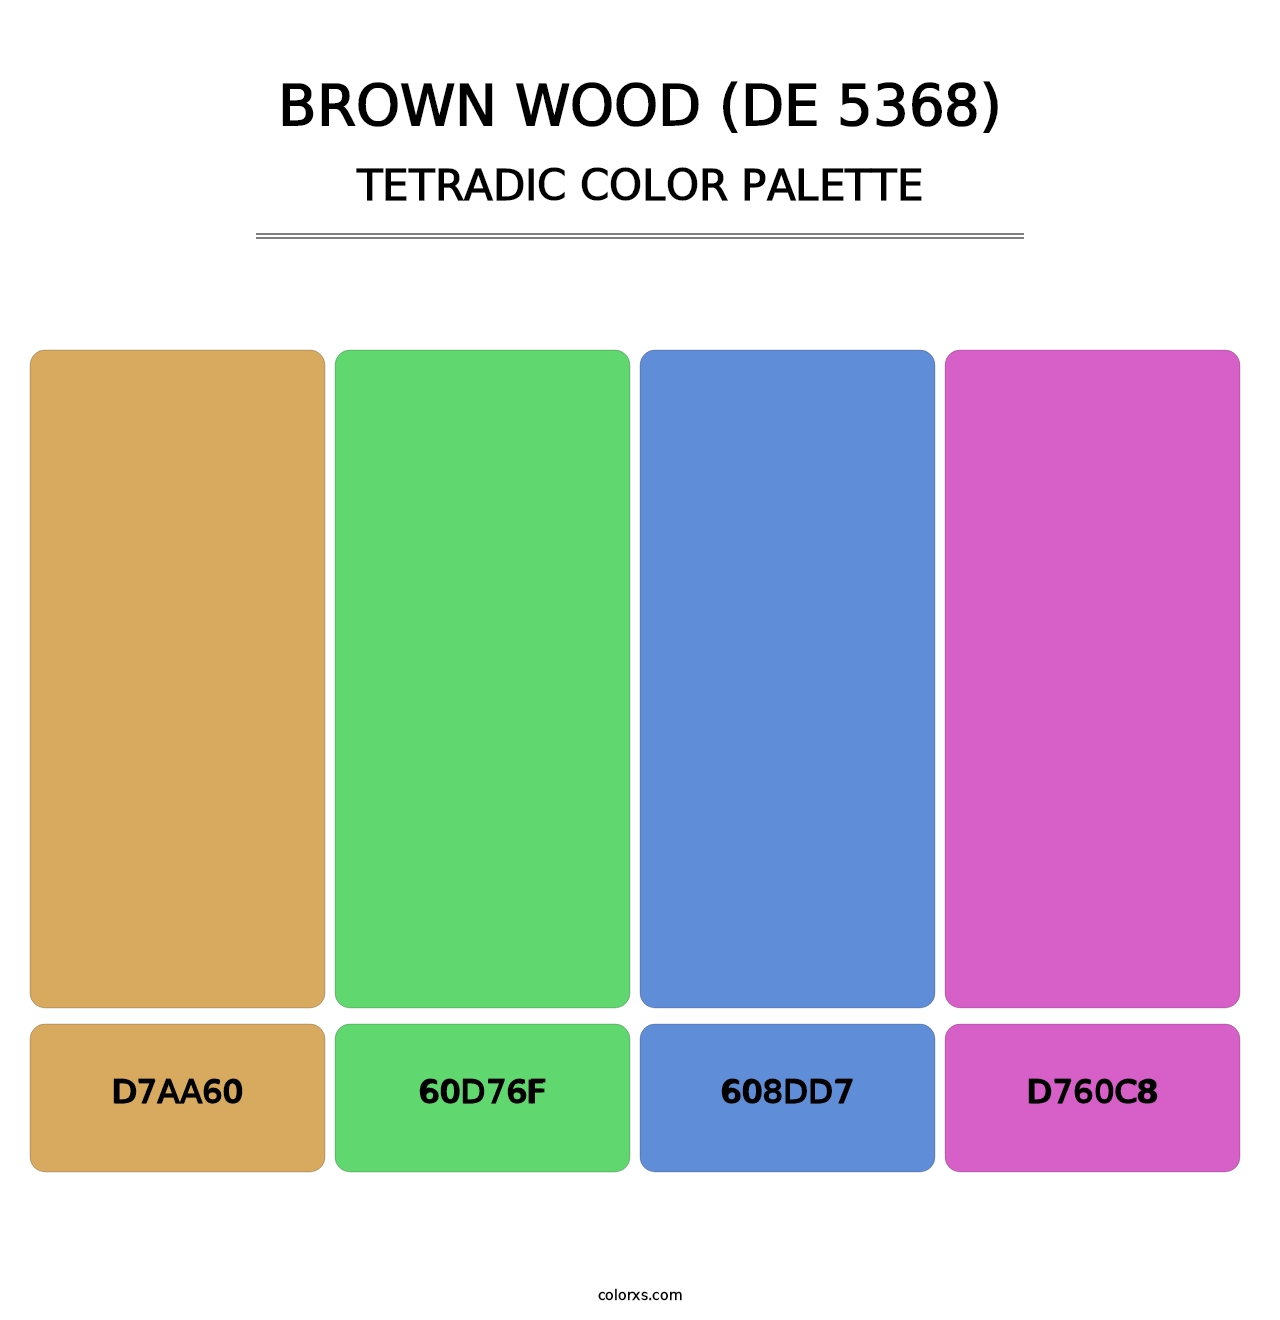 Brown Wood (DE 5368) - Tetradic Color Palette